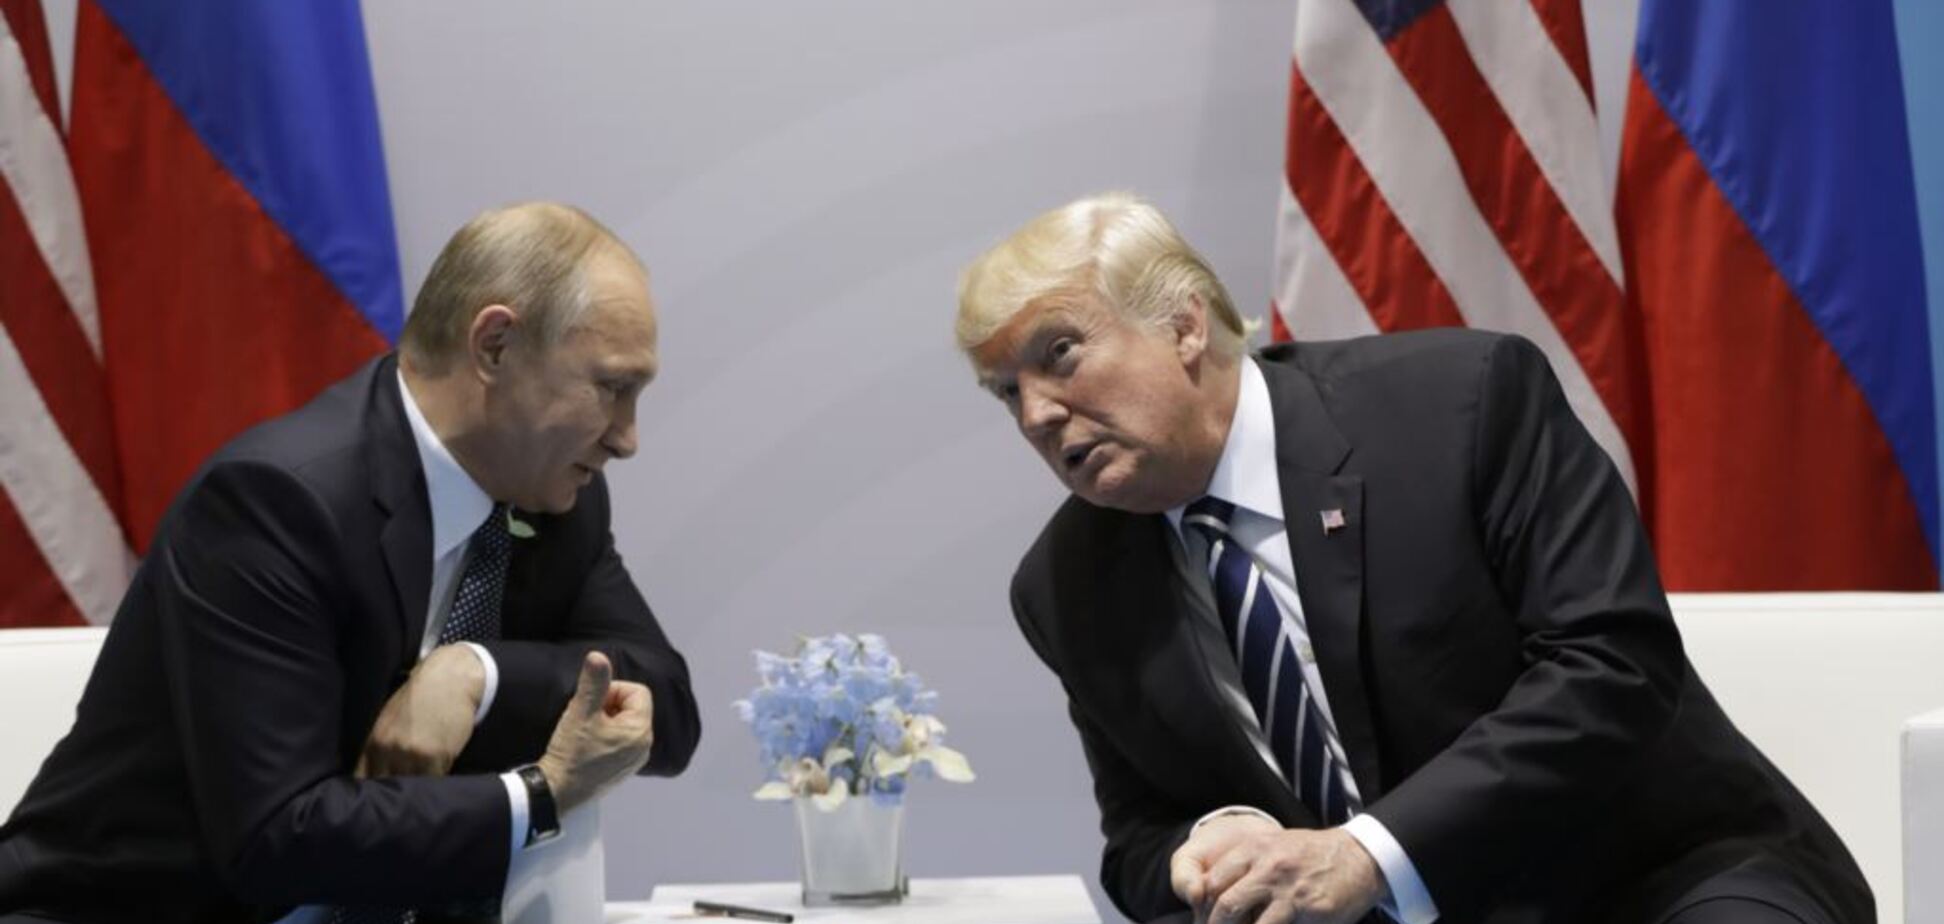 Обговорювали Україну: Трамп провів переговори з Путіним